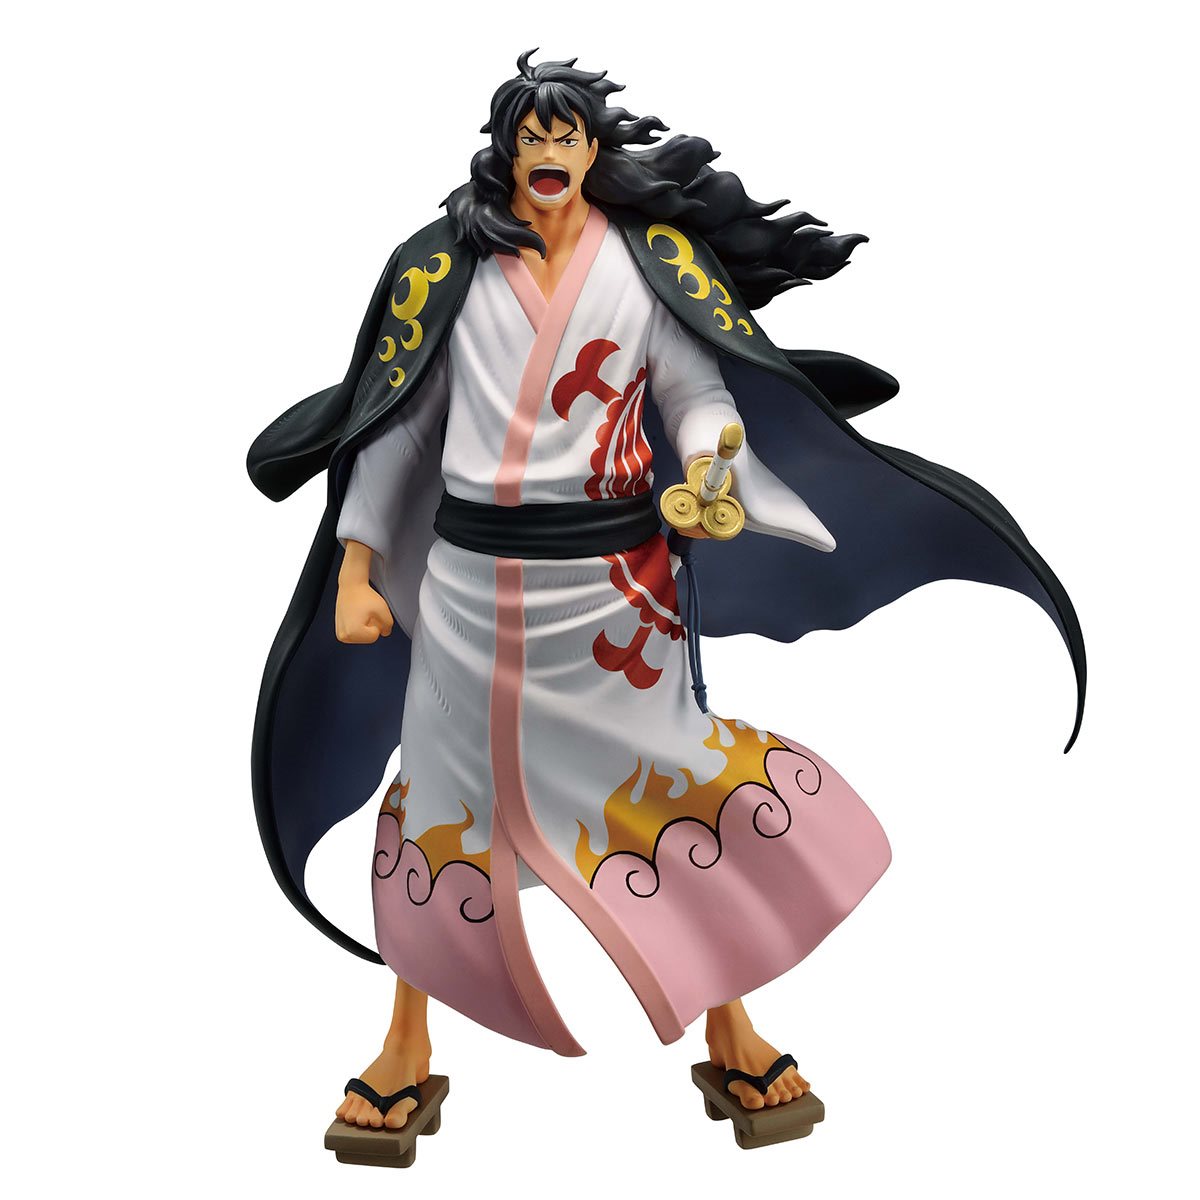 Bandai Tamashii Nations: One Piece - Momonosuke Shogun Estatua Ichibansho Masterlise